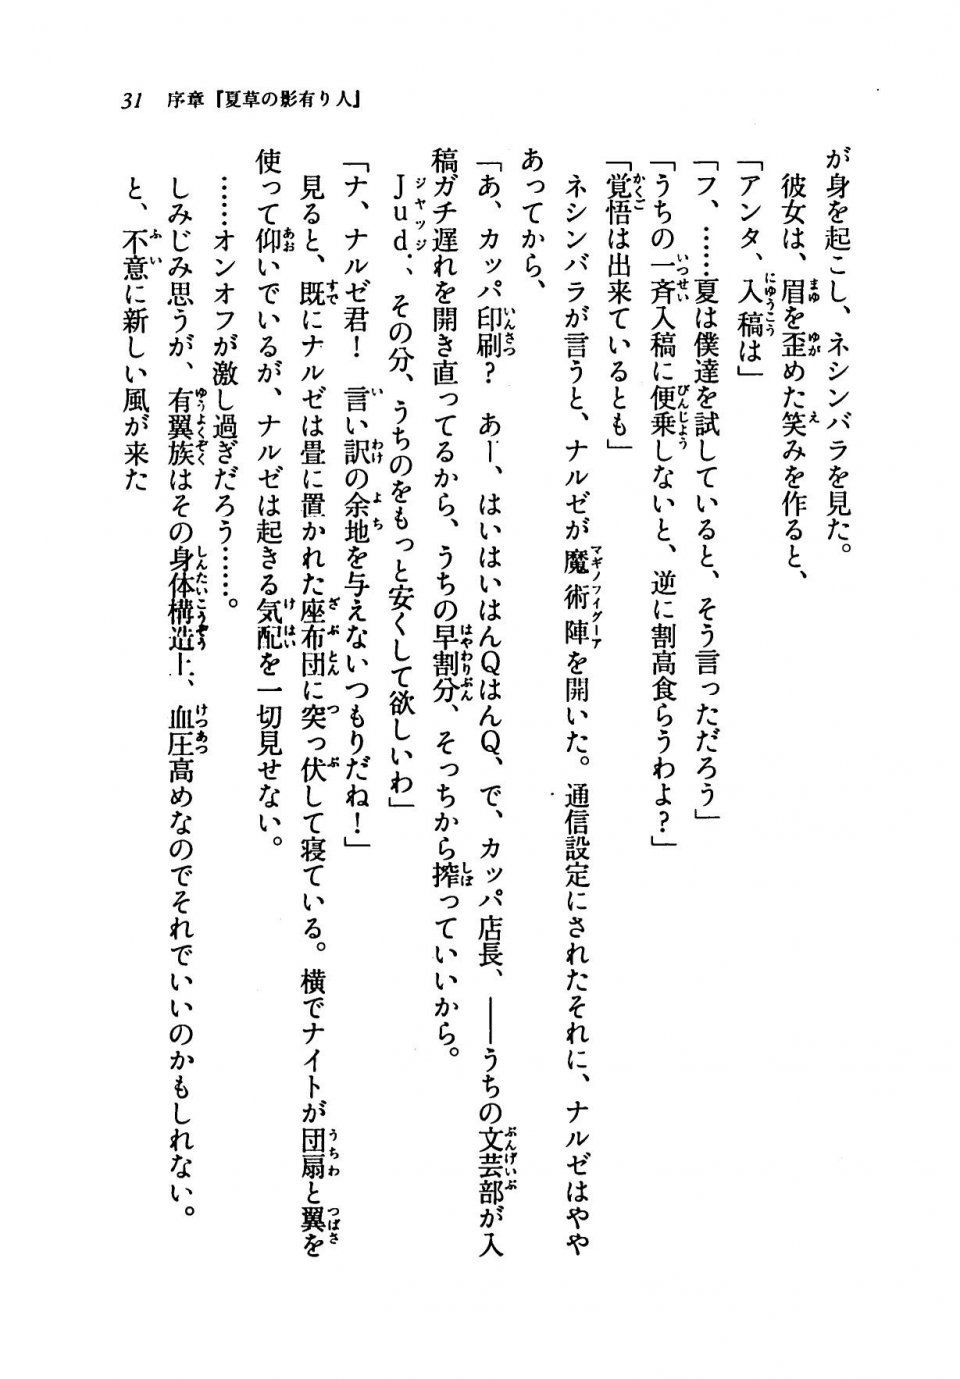 Kyoukai Senjou no Horizon LN Vol 19(8A) - Photo #31